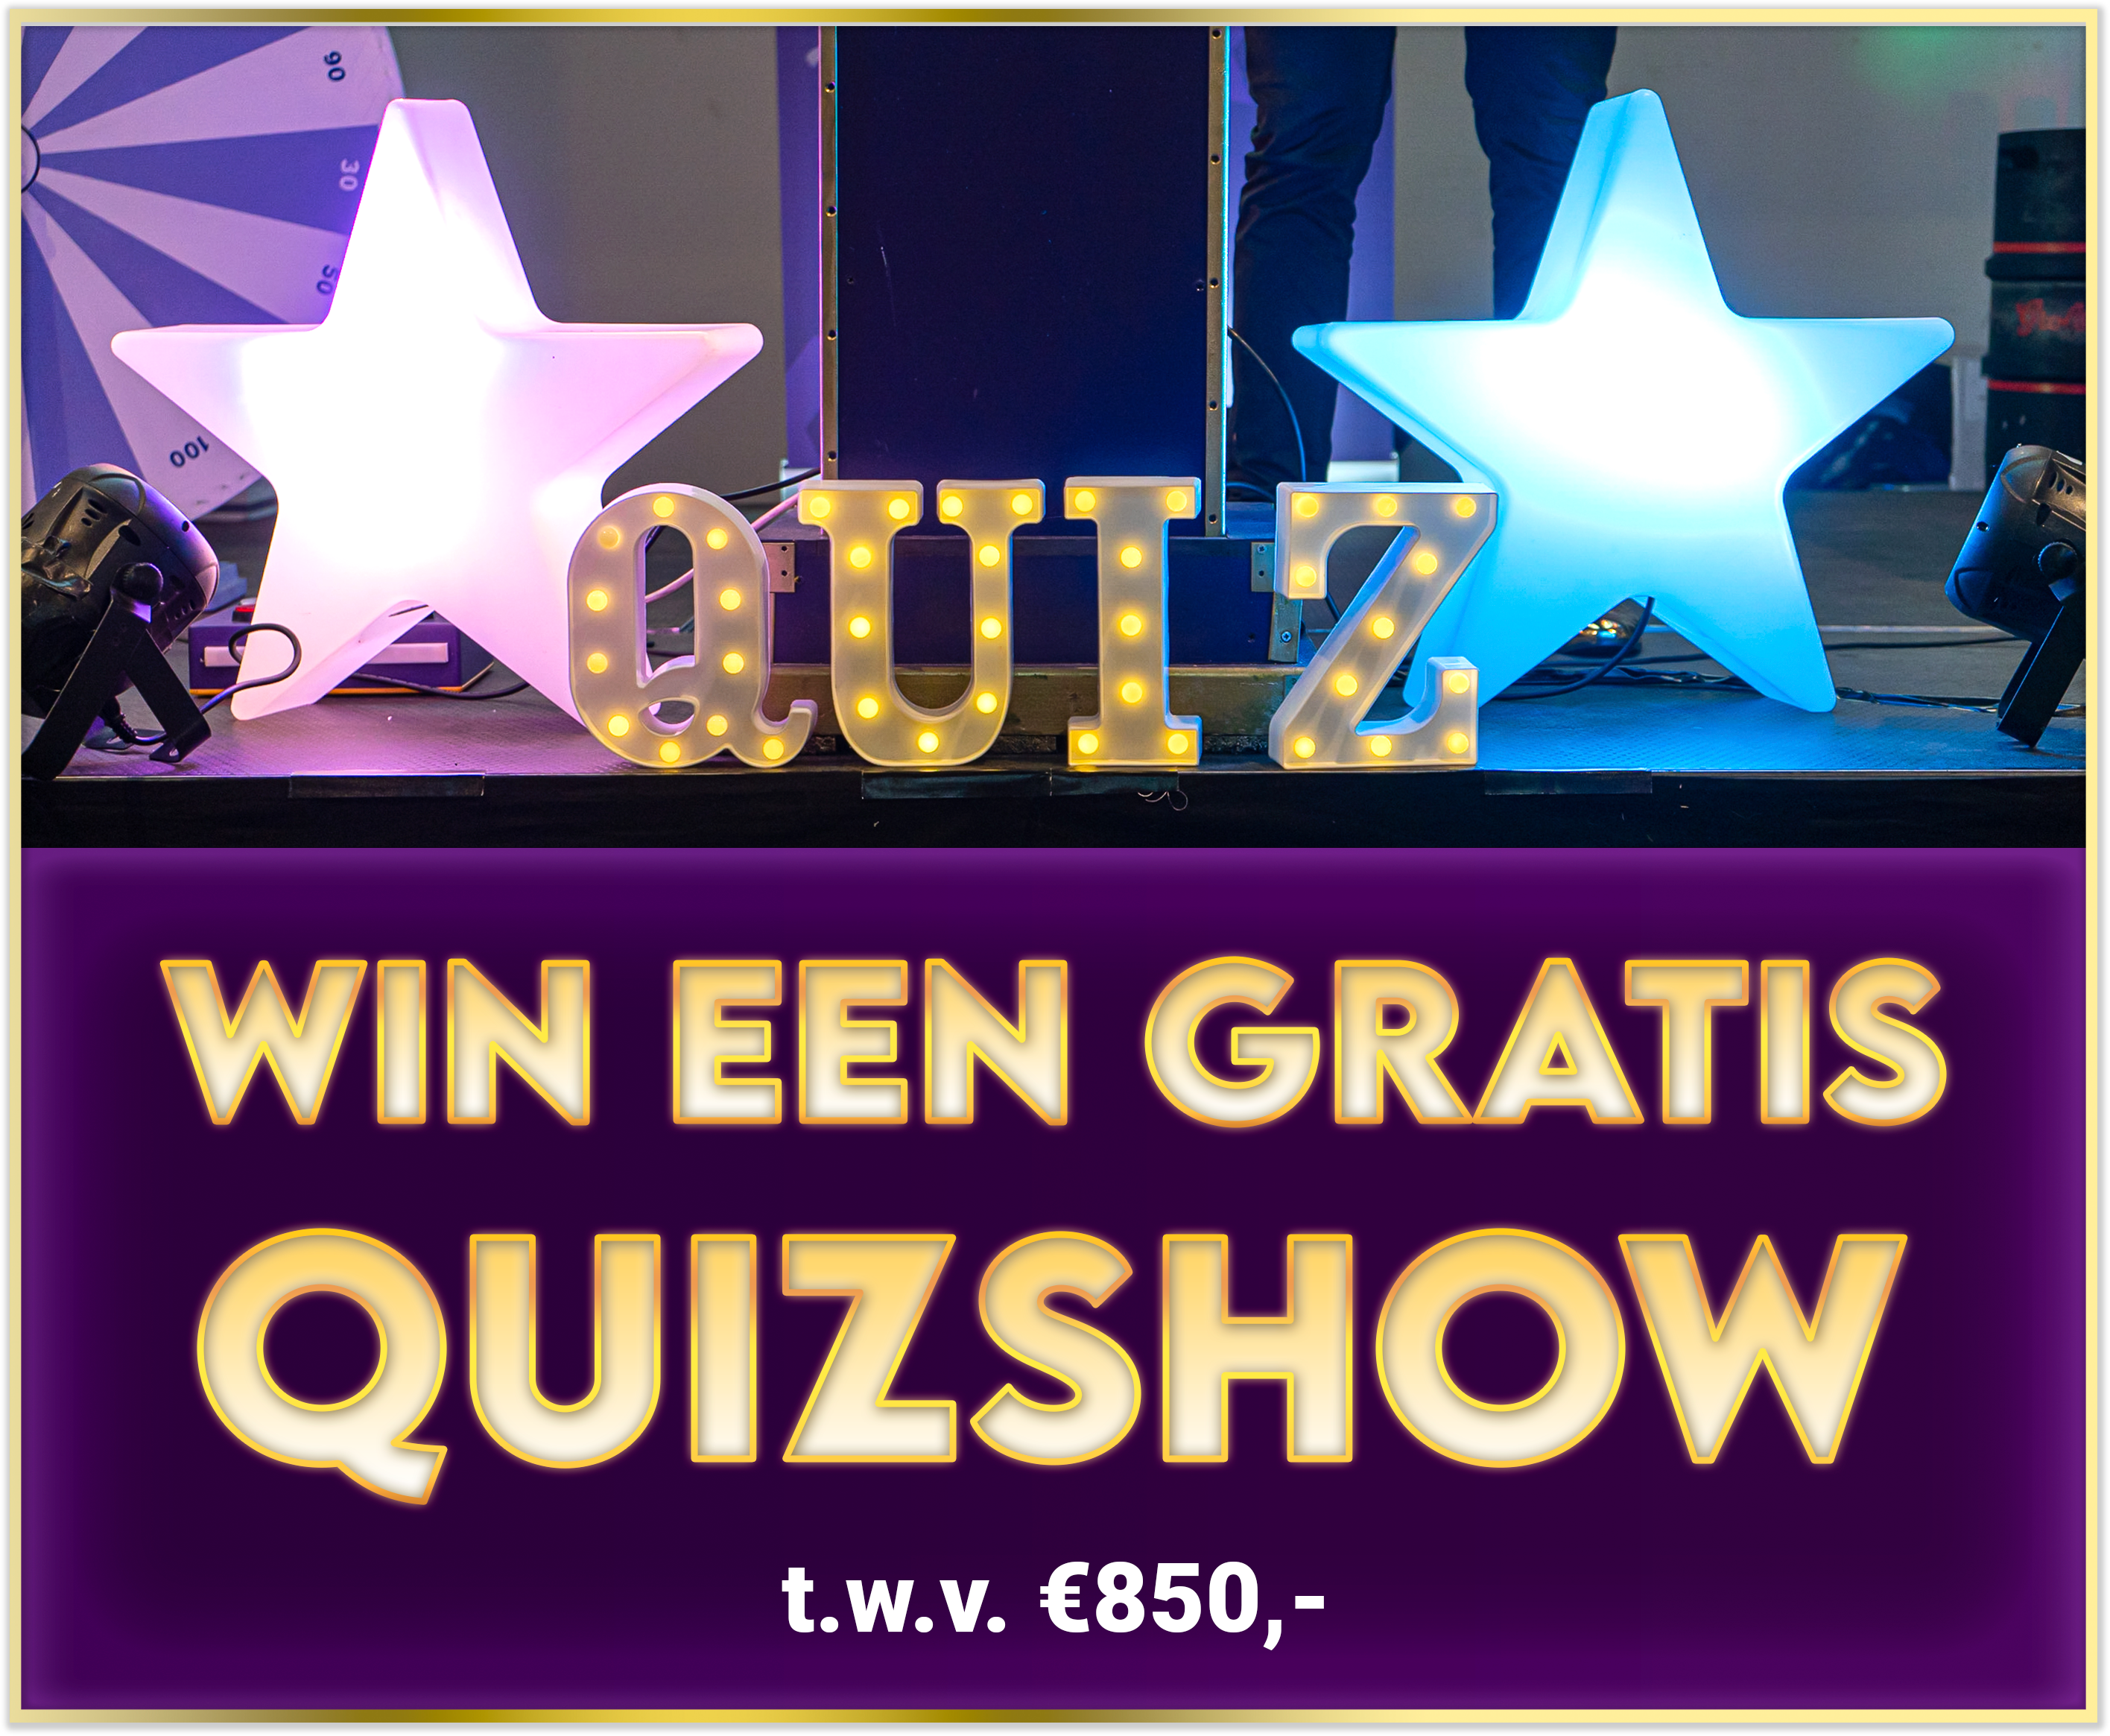 Win een gratis quizshow